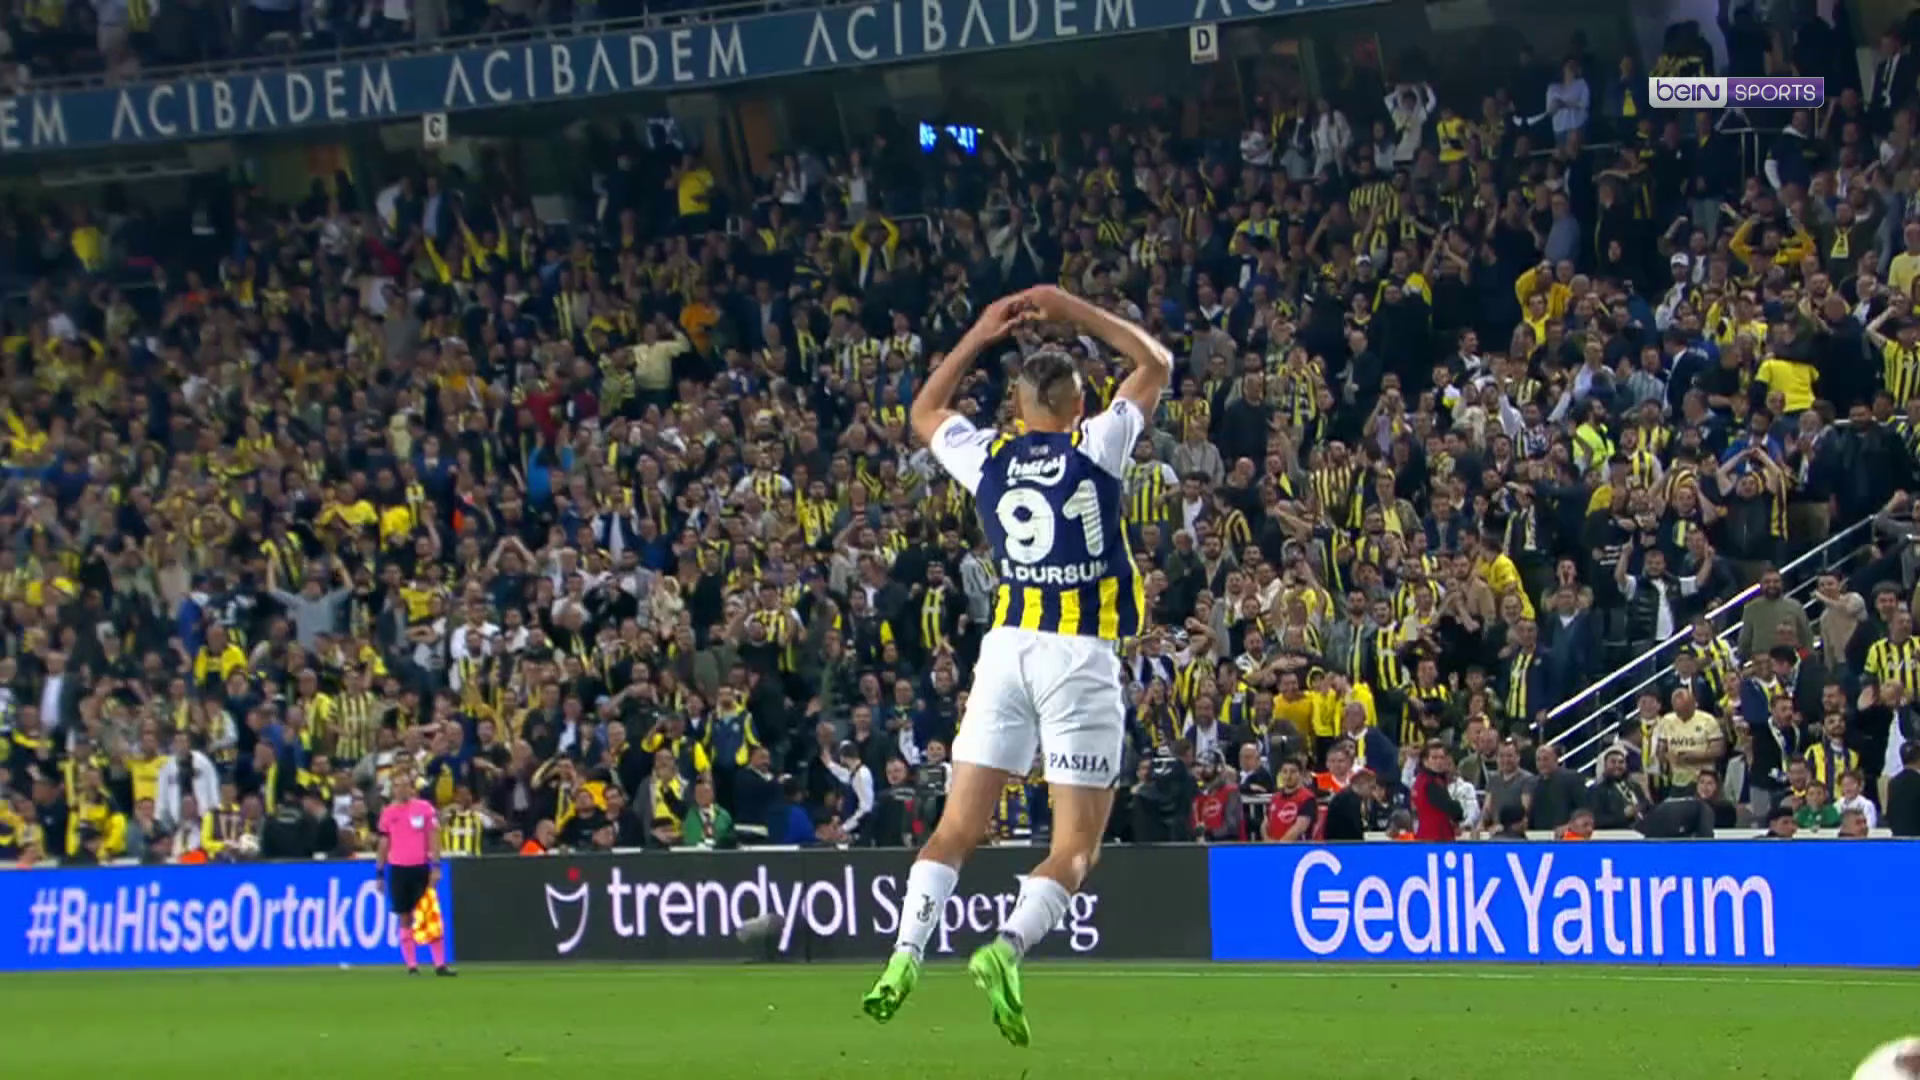 Résumé : Fenerbahçe remporte un match dingue contre Balotelli et Demirspor